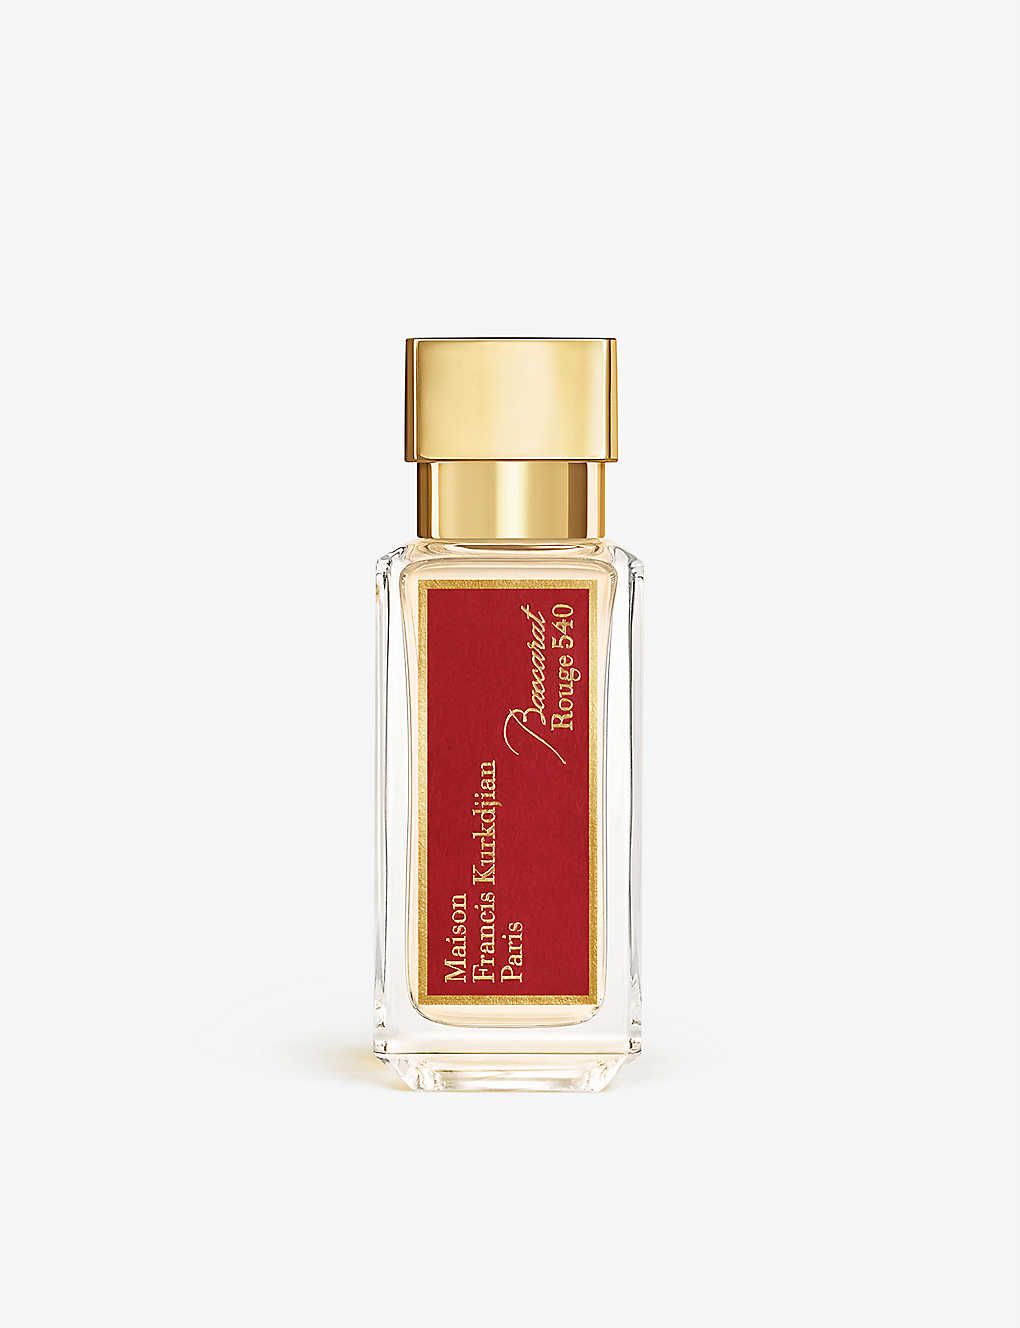 Baccarat Rouge 540 eau de parfum 35ml | Selfridges